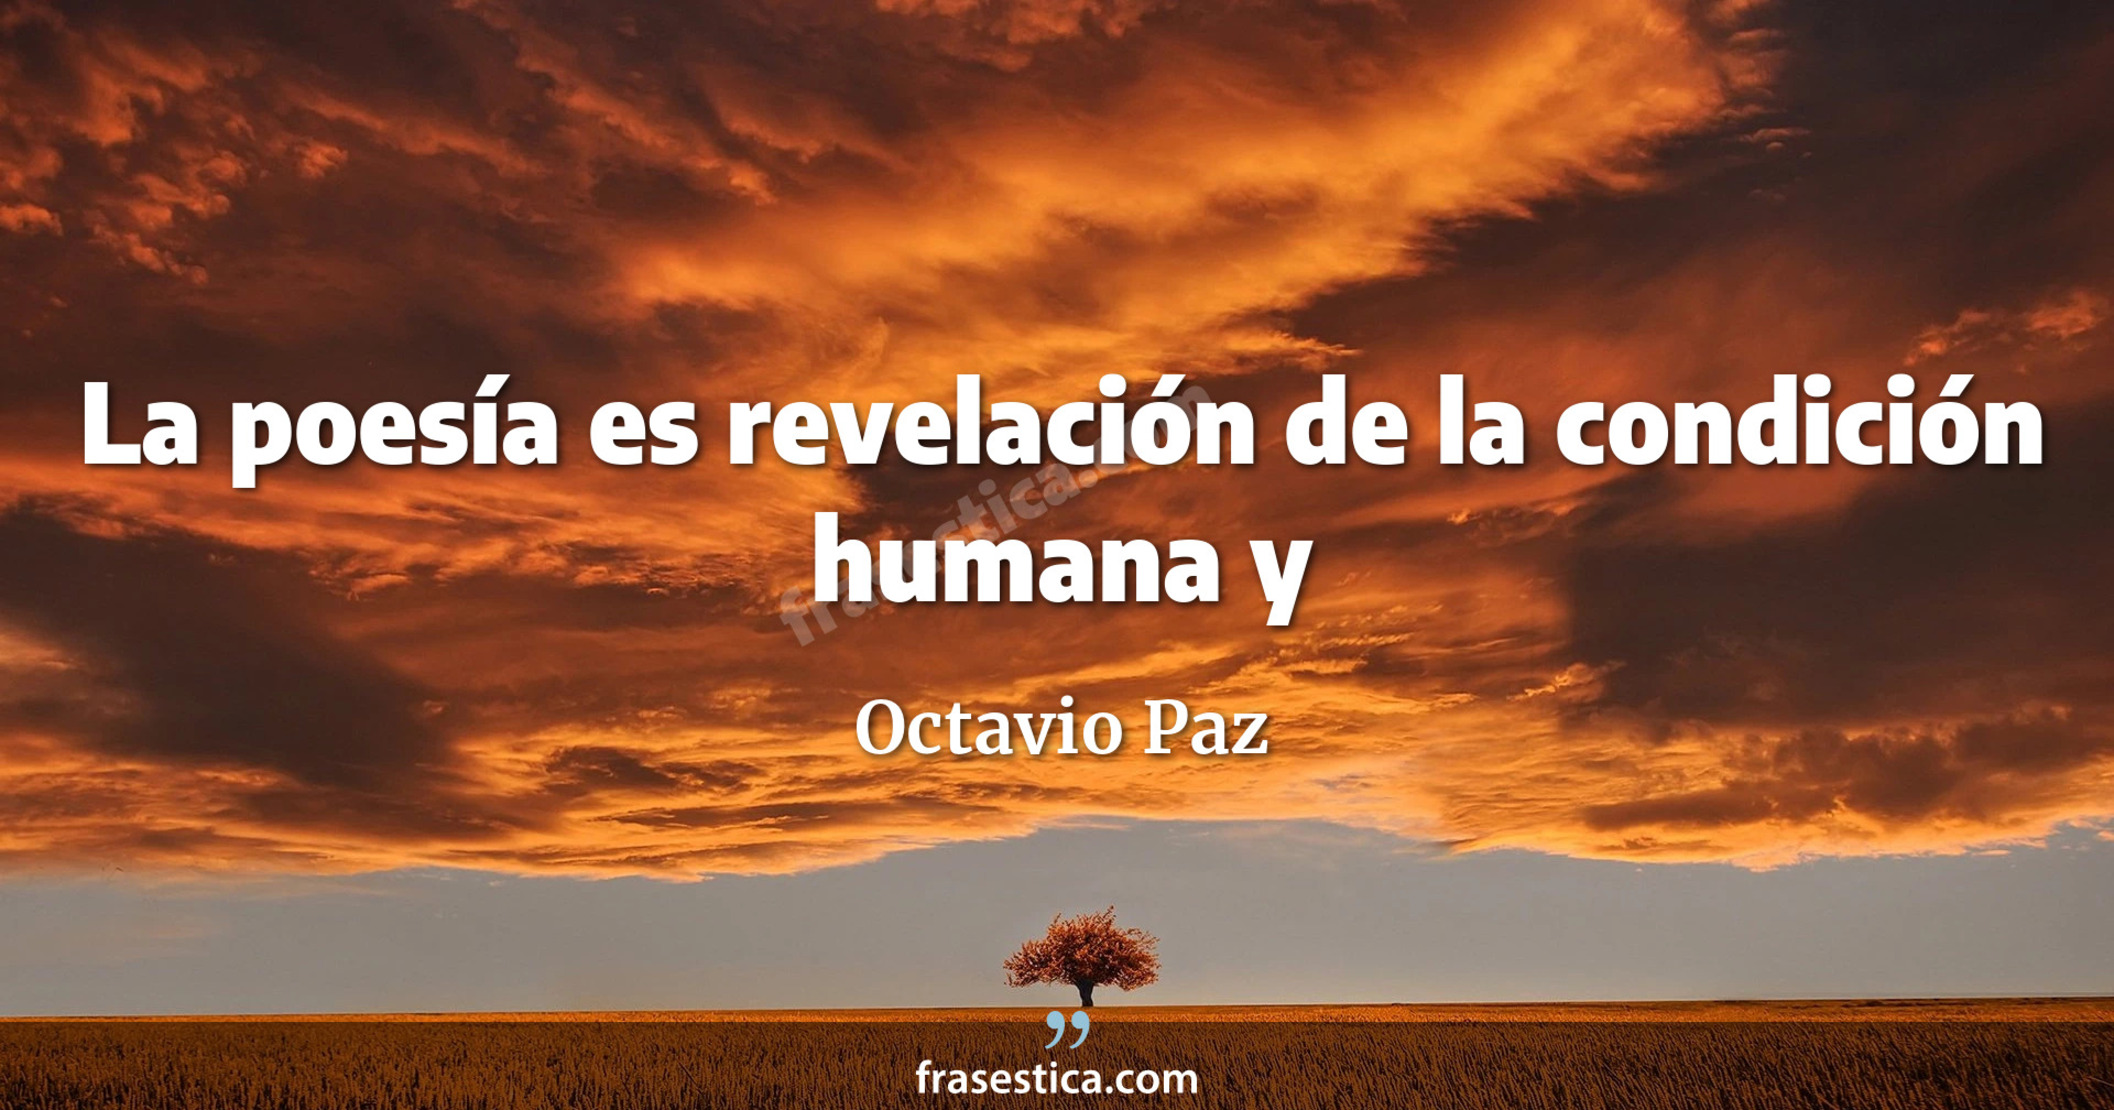 La poesía es revelación de la condición humana y
     - Octavio Paz